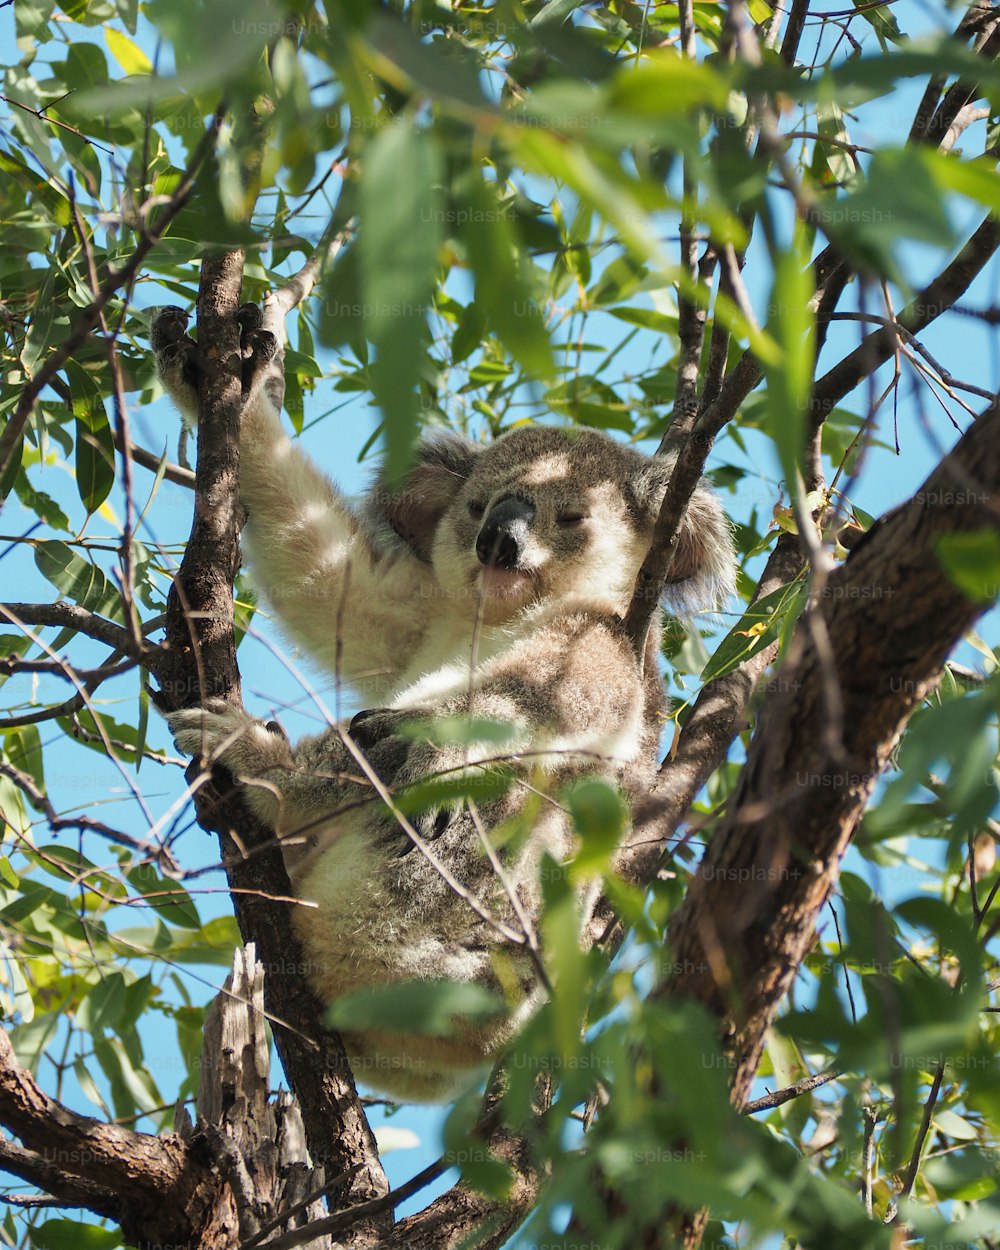 Um coala está sentado em uma árvore e olhando para a câmera